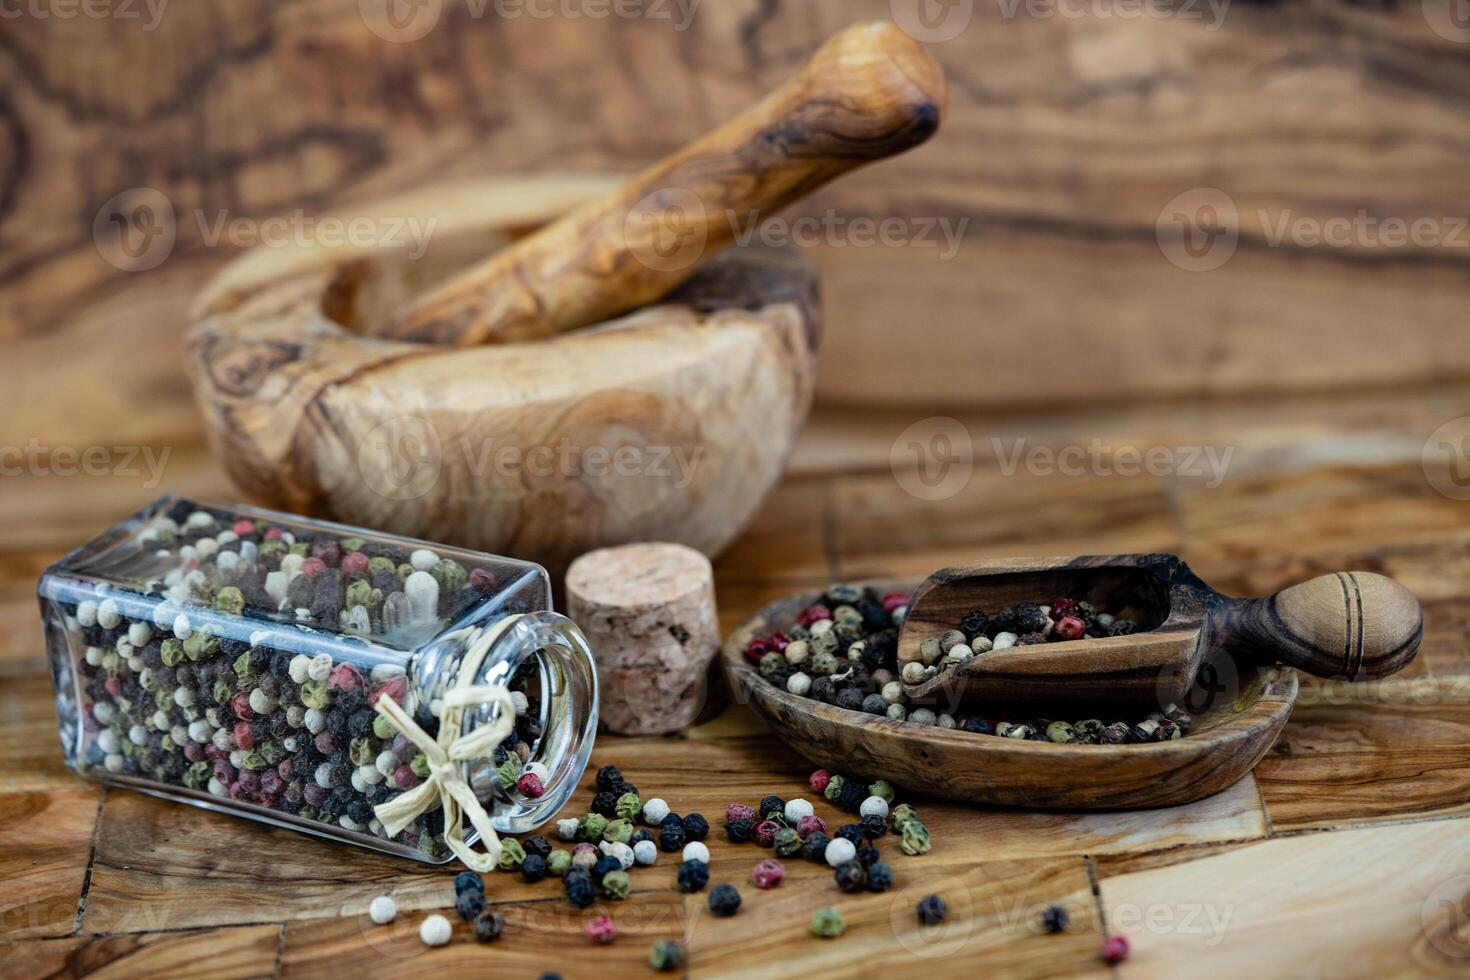 ein Stapel von Pfefferkörner auf Olive Holz foto